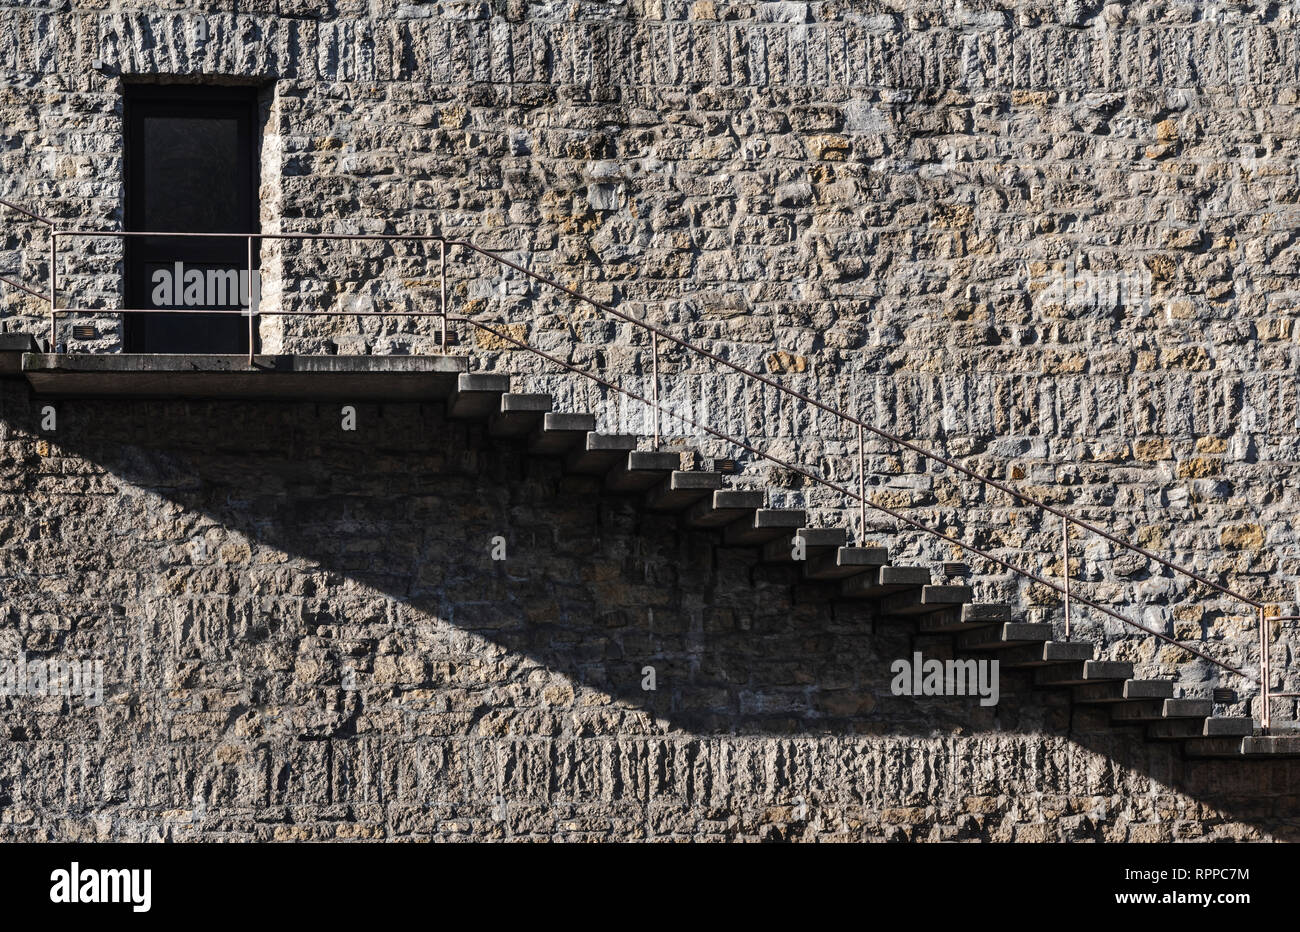 Immagine minima di una scala esterna e porta su un muro di pietra edificio. Architettura d'epoca in un concetto minimalista. Foto Stock